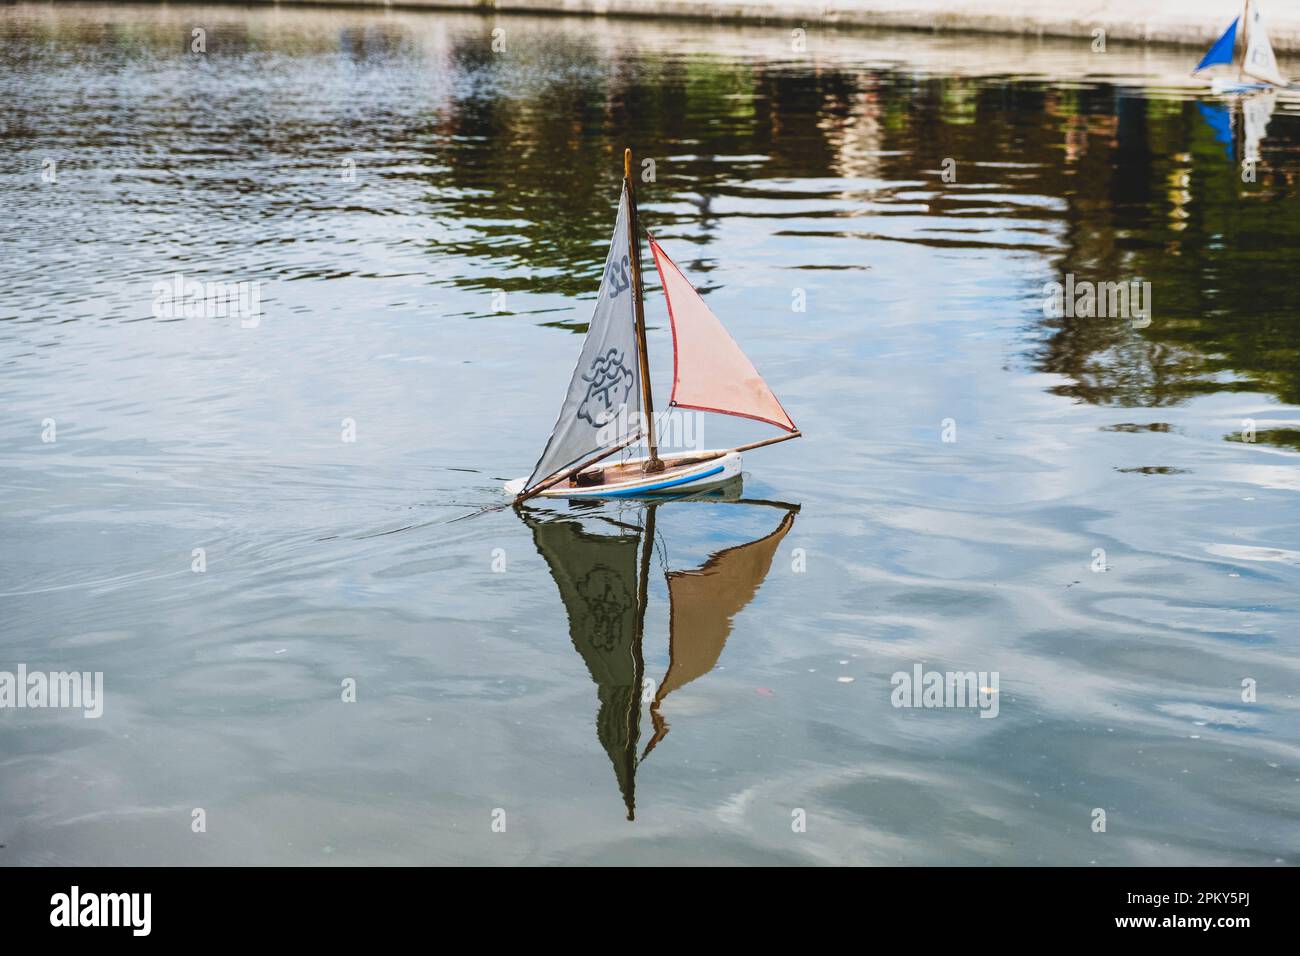 Barca a vela giocattolo con giocose vele dal design facciale su un laghetto con giardino parigino Foto Stock